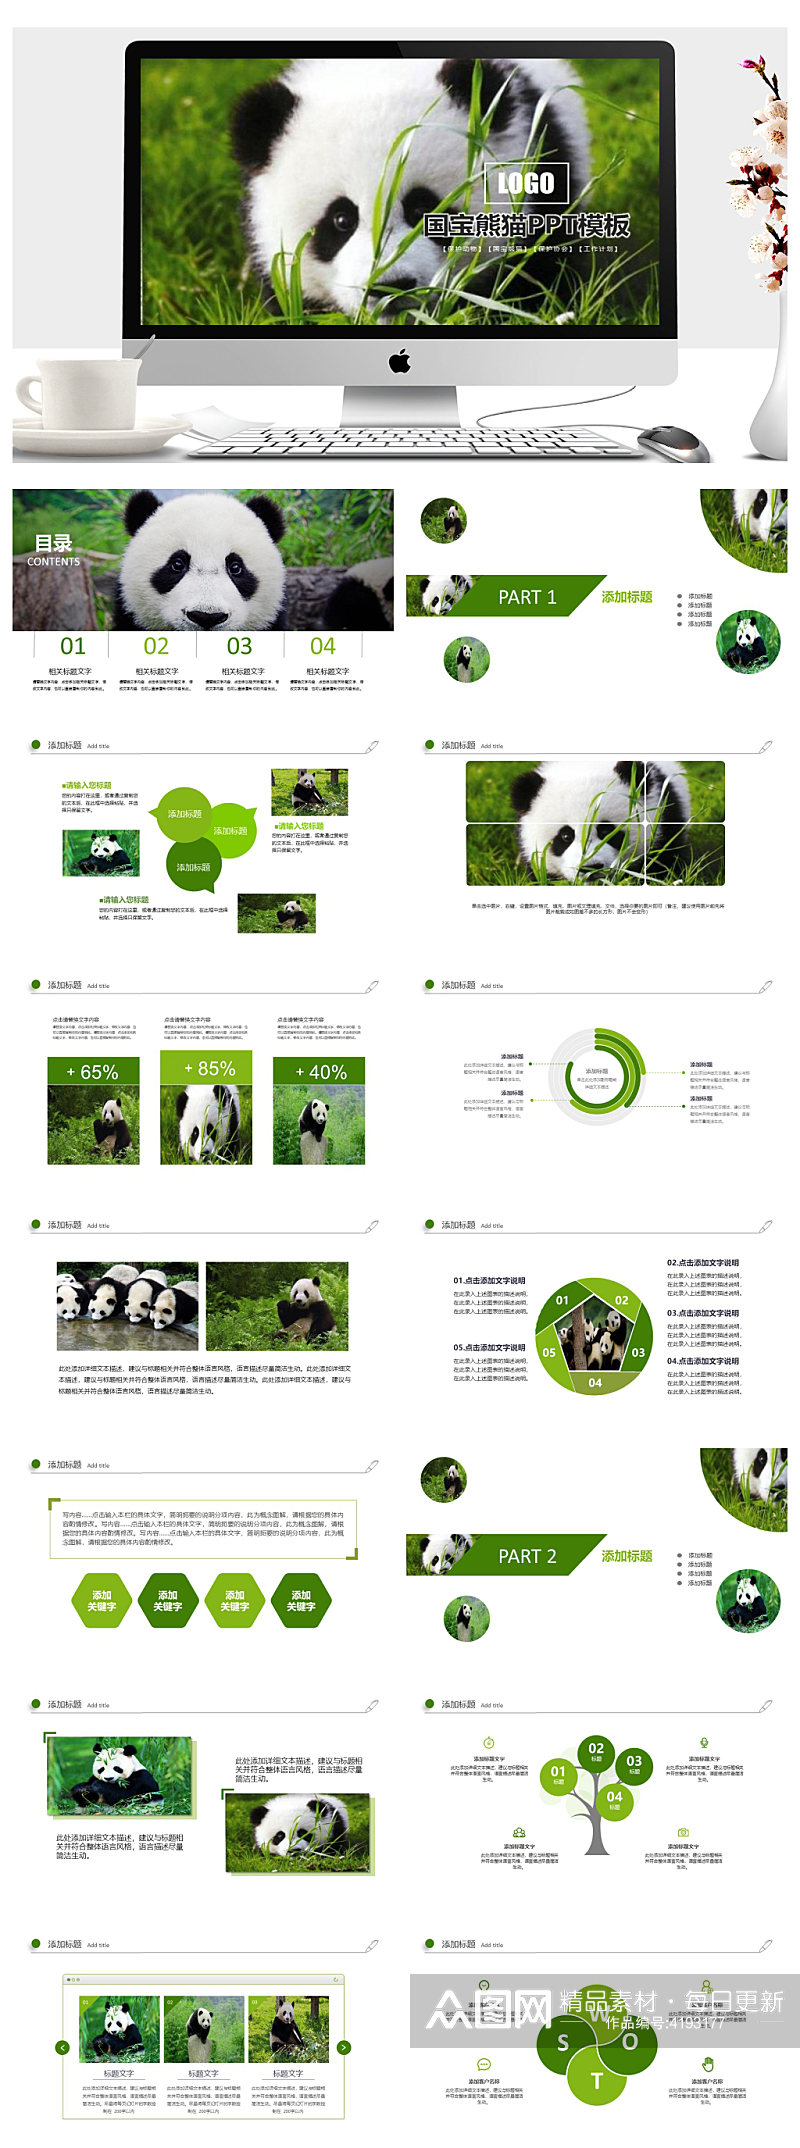 保护动物活动总结国宝熊猫主题PPT素材